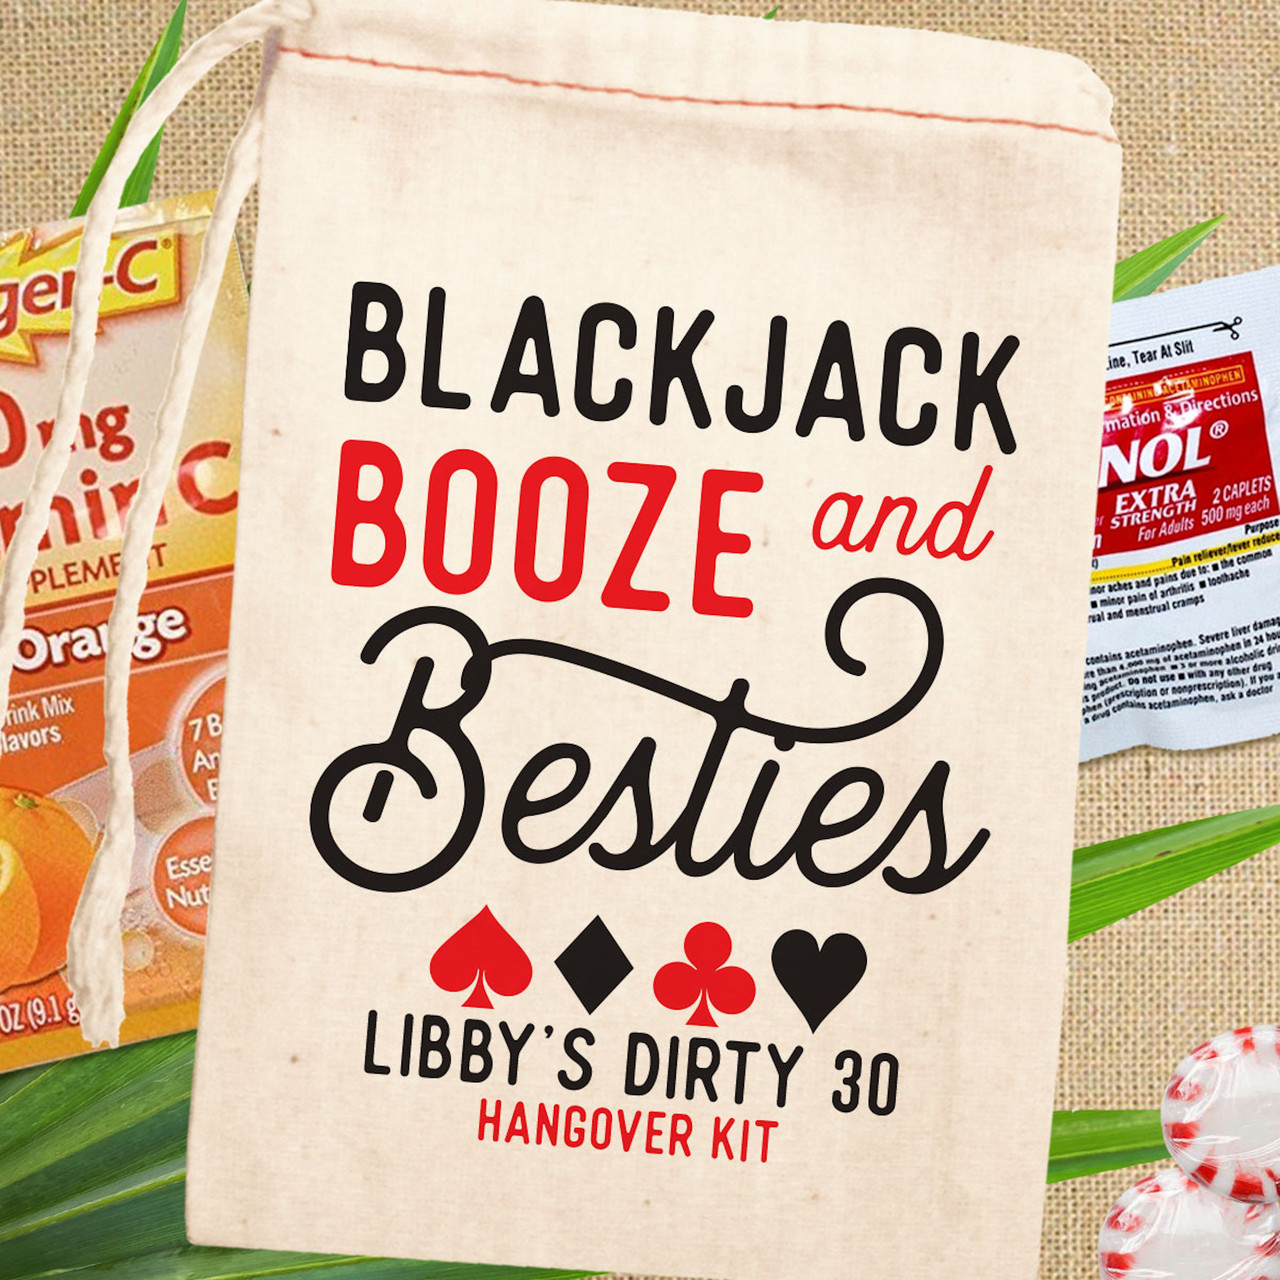 Blackjack Booze & Besties Personalized Pool Tote + Beach Bag